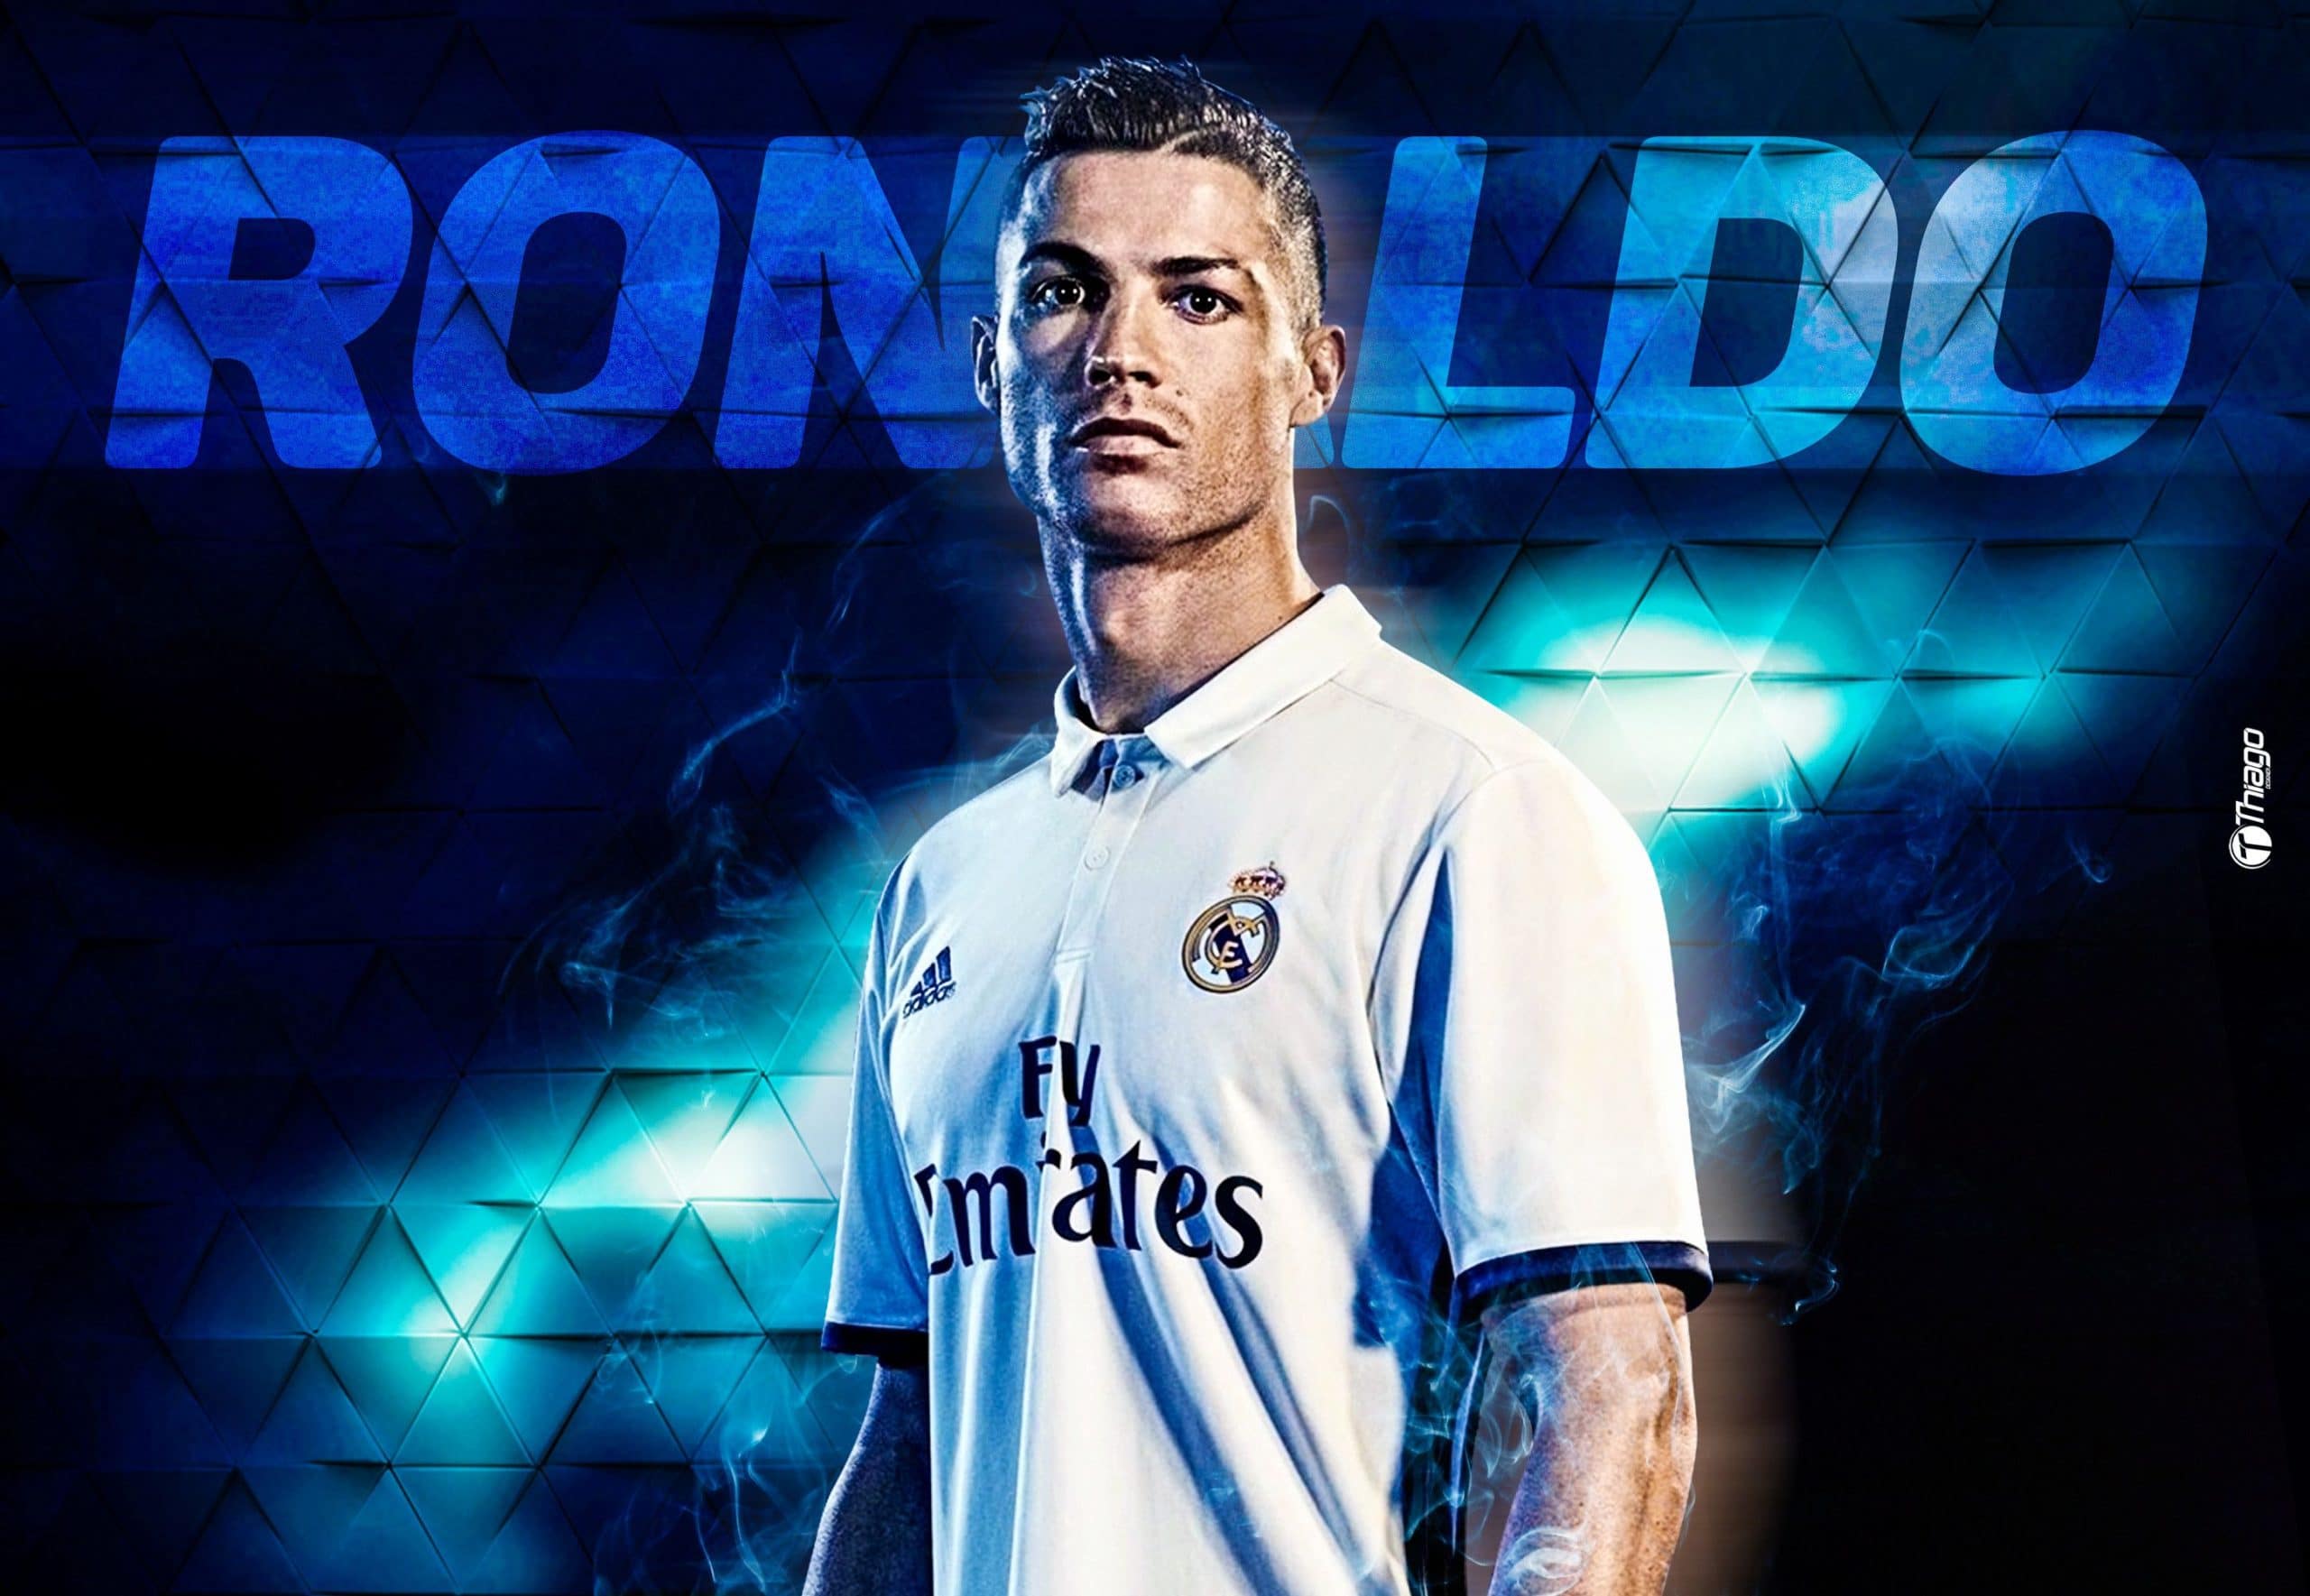 160 Hình nền Ronaldo ý tưởng  ronaldo cristiano ronaldo bóng đá